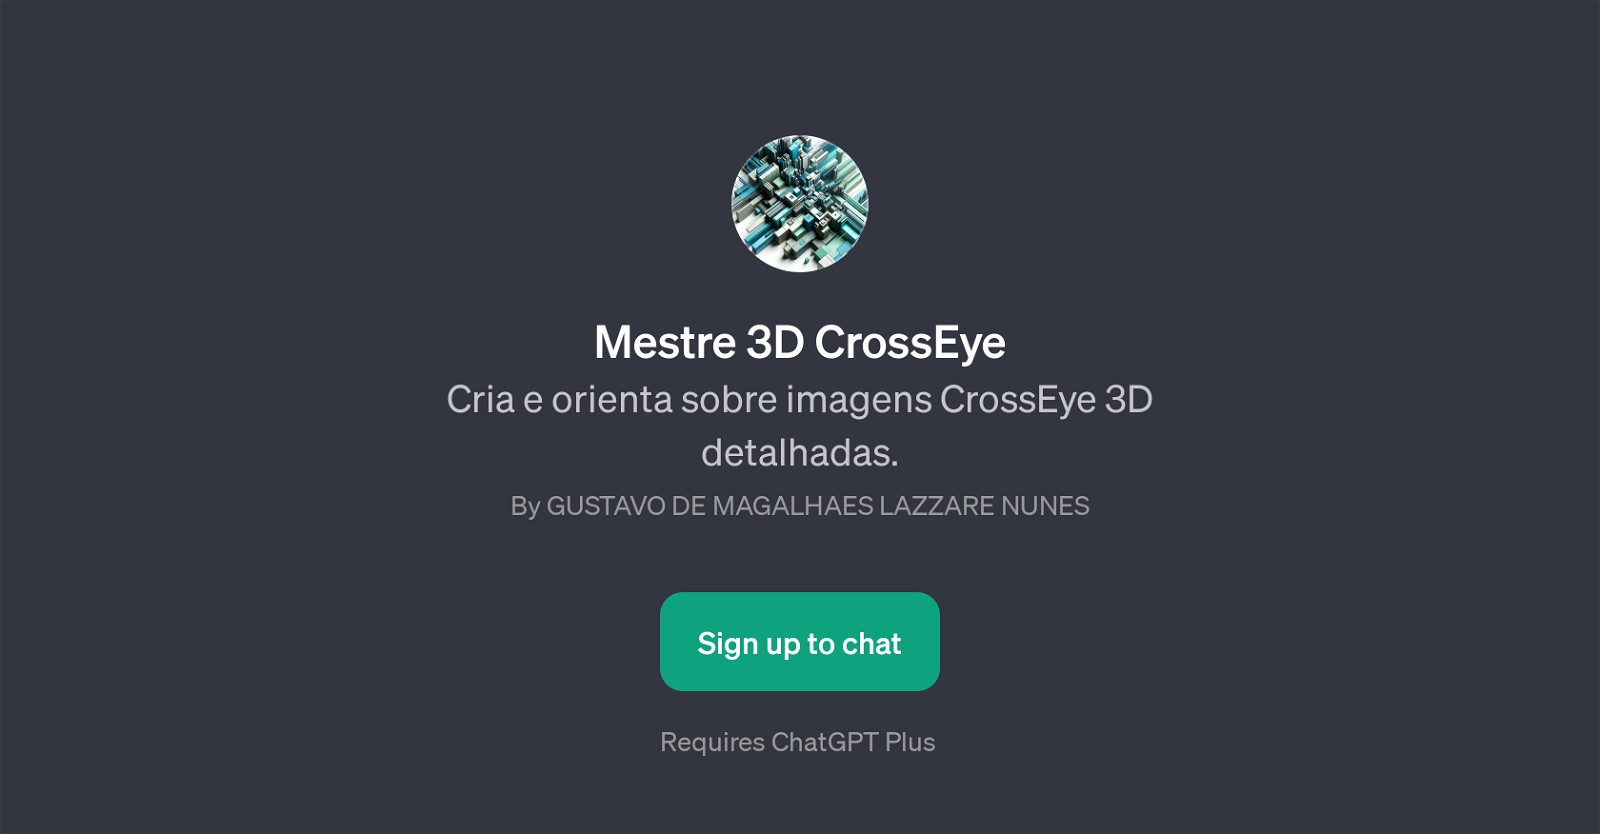 Mestre 3D CrossEye website